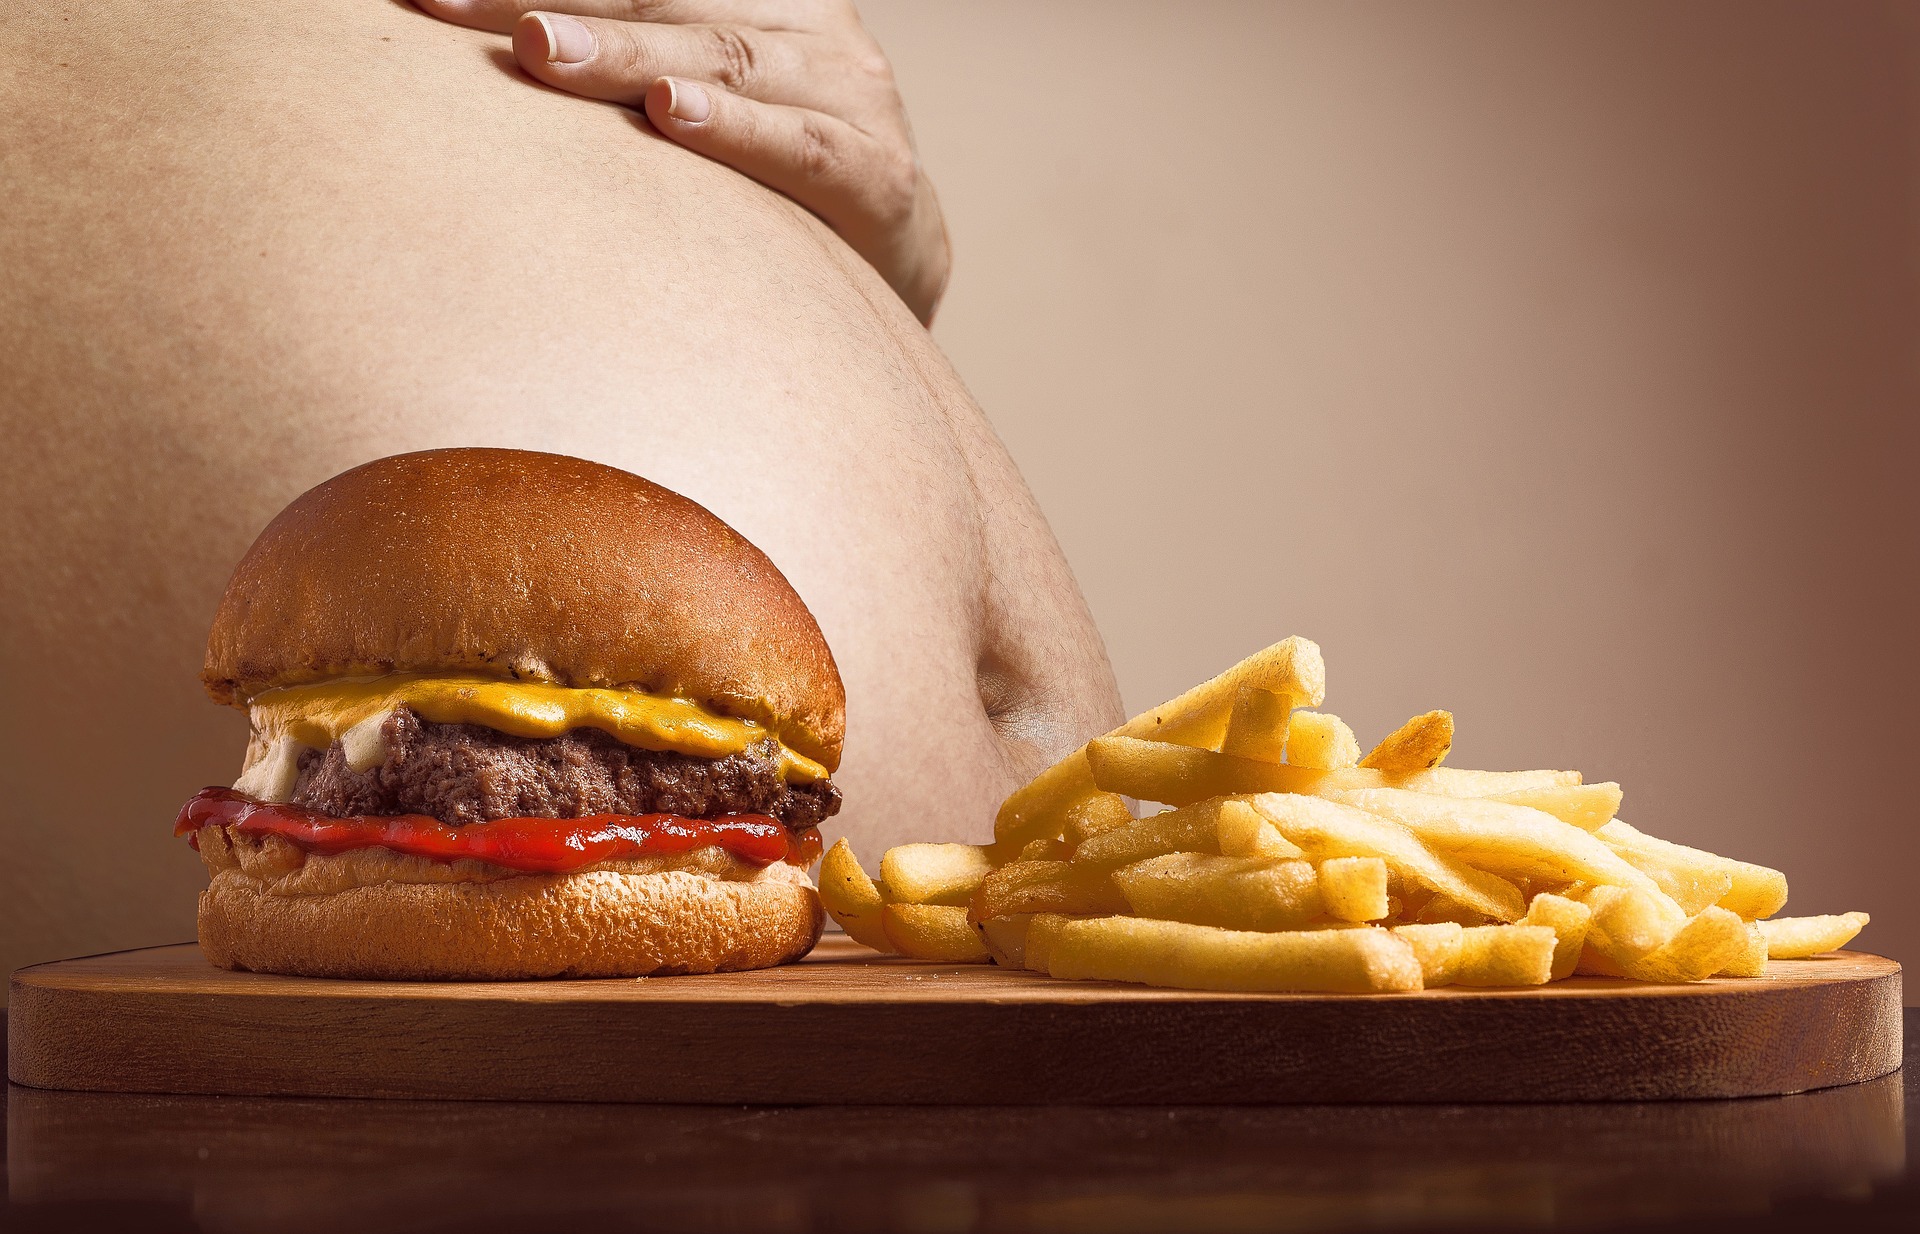 Berdasarkan Studi, Penyebab Gangguan Kesehatan Serius Adalah Makan Terlalu Malam